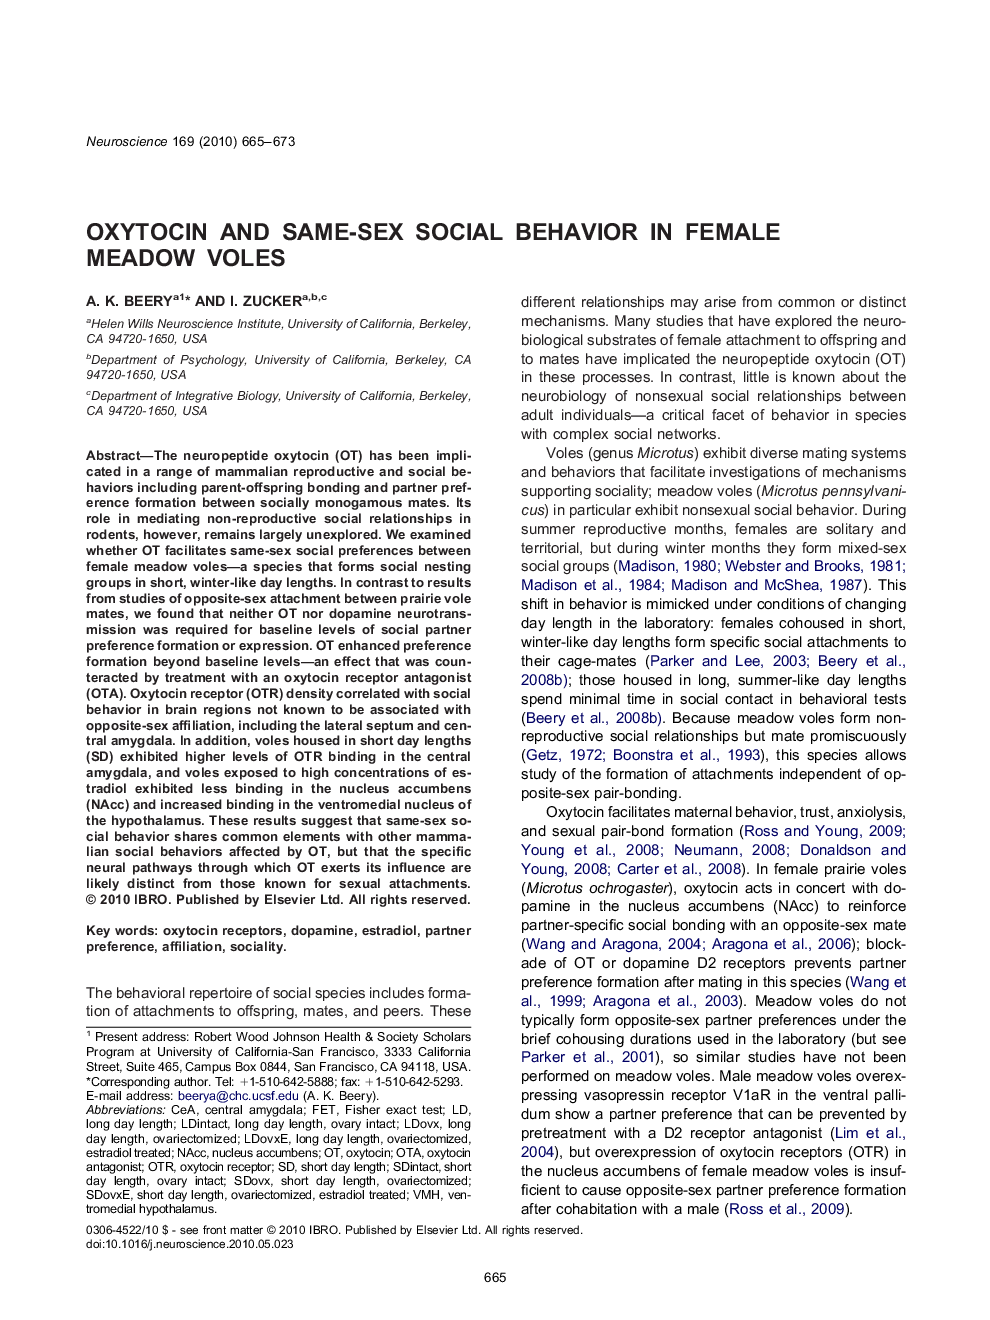 Oxytocin and same-sex social behavior in female meadow voles